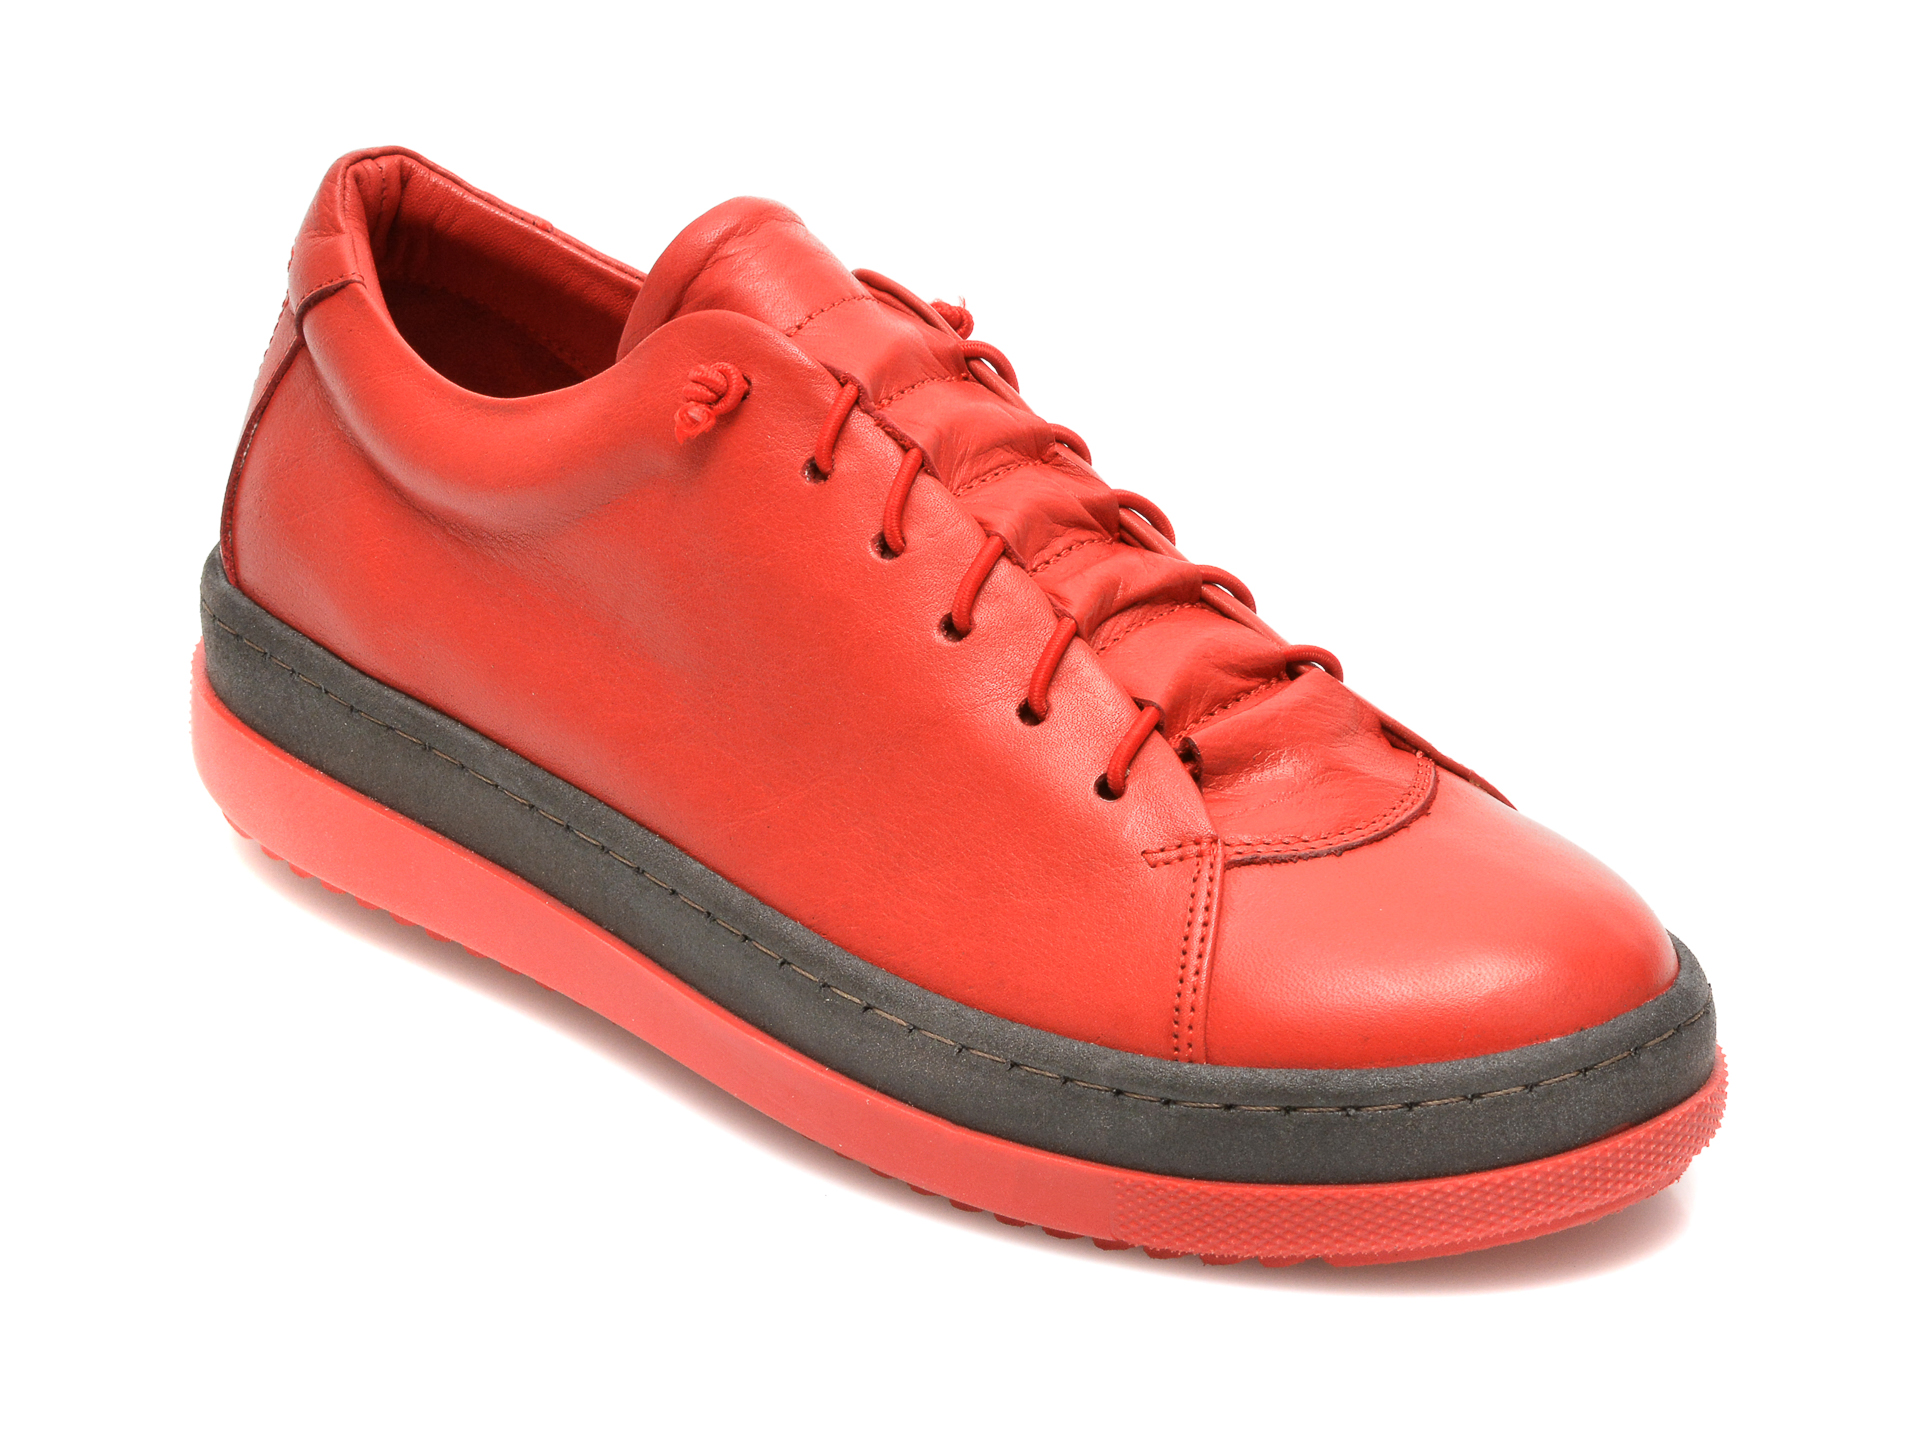 Pantofi FLAVIA PASSINI rosii, 2912, din piele naturala Flavia Passini